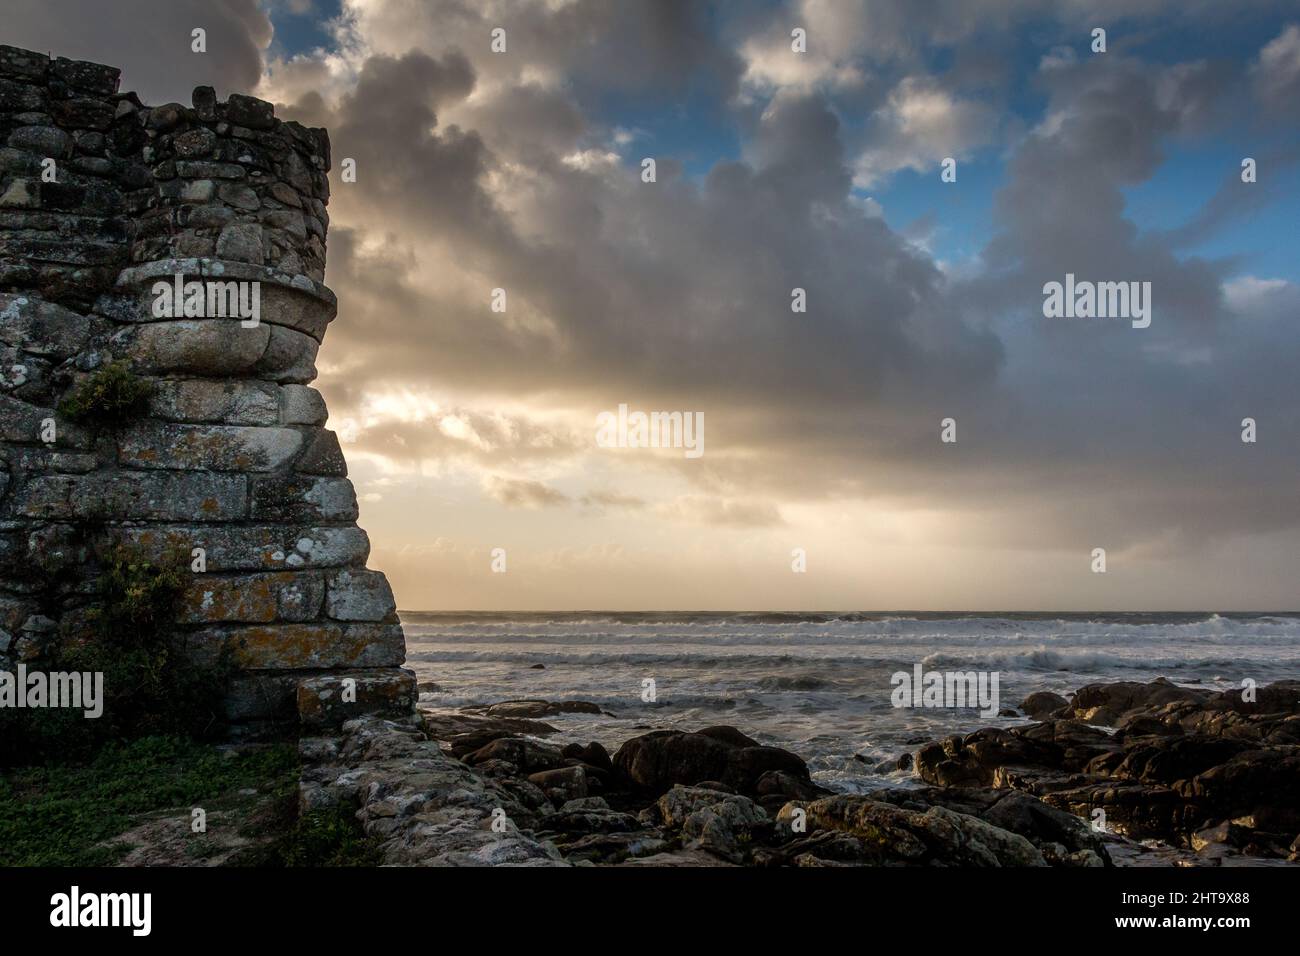 Une belle vue sur la mer avec un ciel nuageux et un vieux mur Banque D'Images